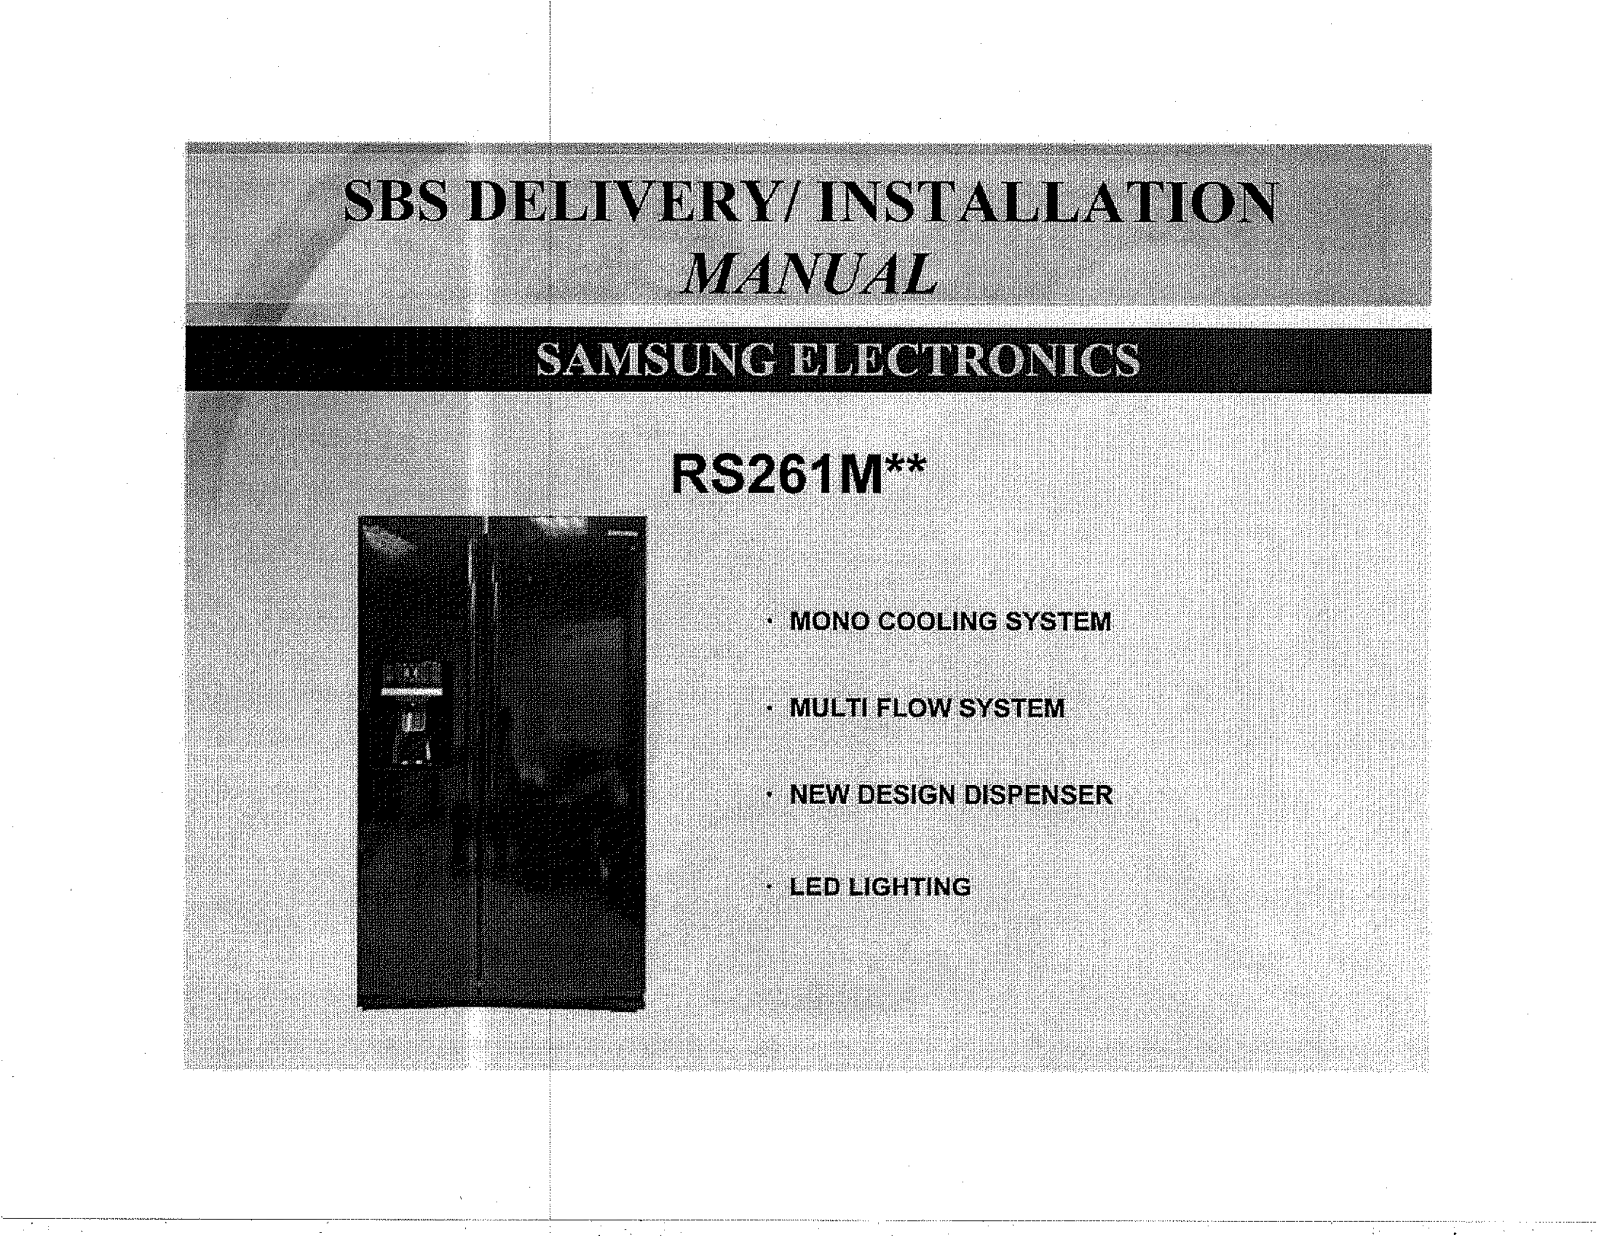 Samsung RS267TDPN/XAA-00, RS267TDRS/XAA-02, RS267TDRS/XAA-03, RS267TDWP/XAA-00, RS267TDWP/XAA-01 Installation Guide